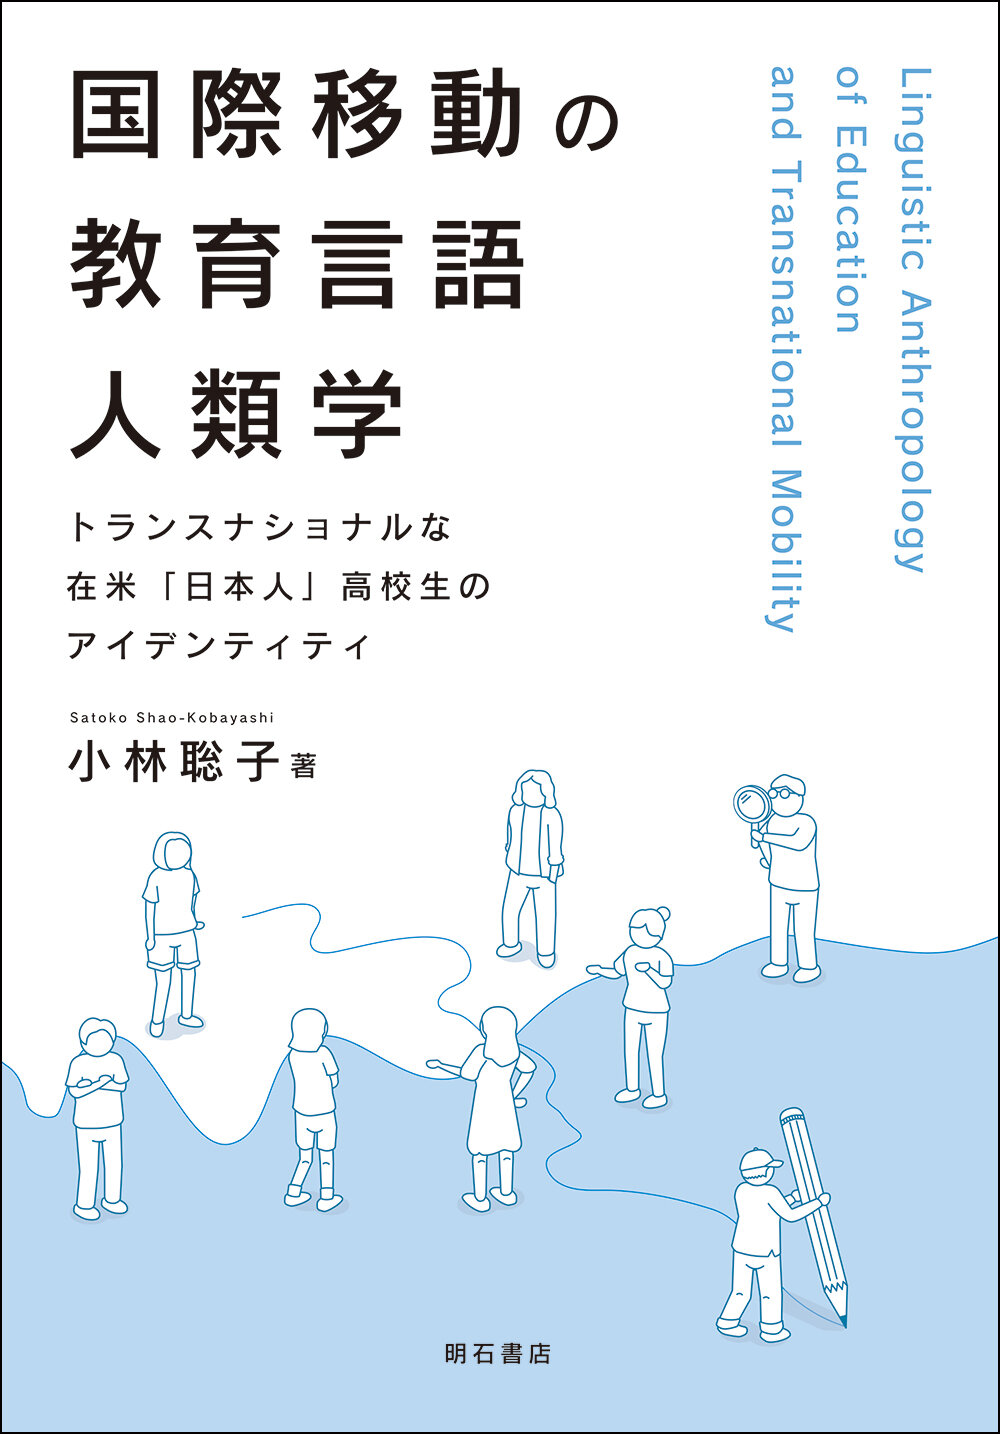 国際移動の教育言語人類学 : トランスナショナルな在米「日本人」高校生のアイデンティティ